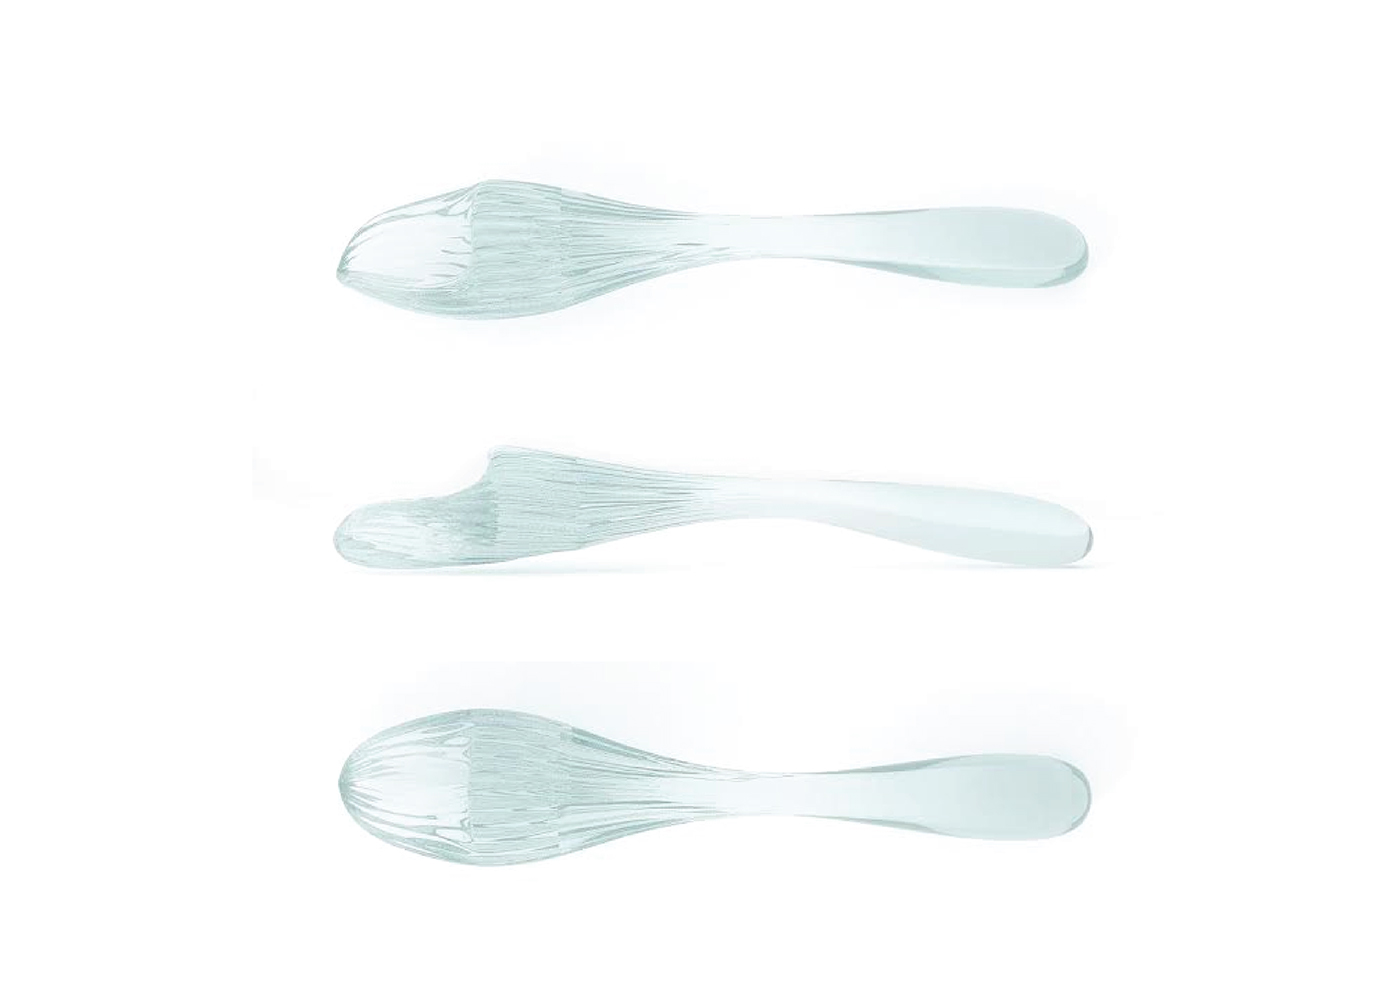 vidrio glass 3d printed Impresión 3D cuchara spoon cubertería cutlery